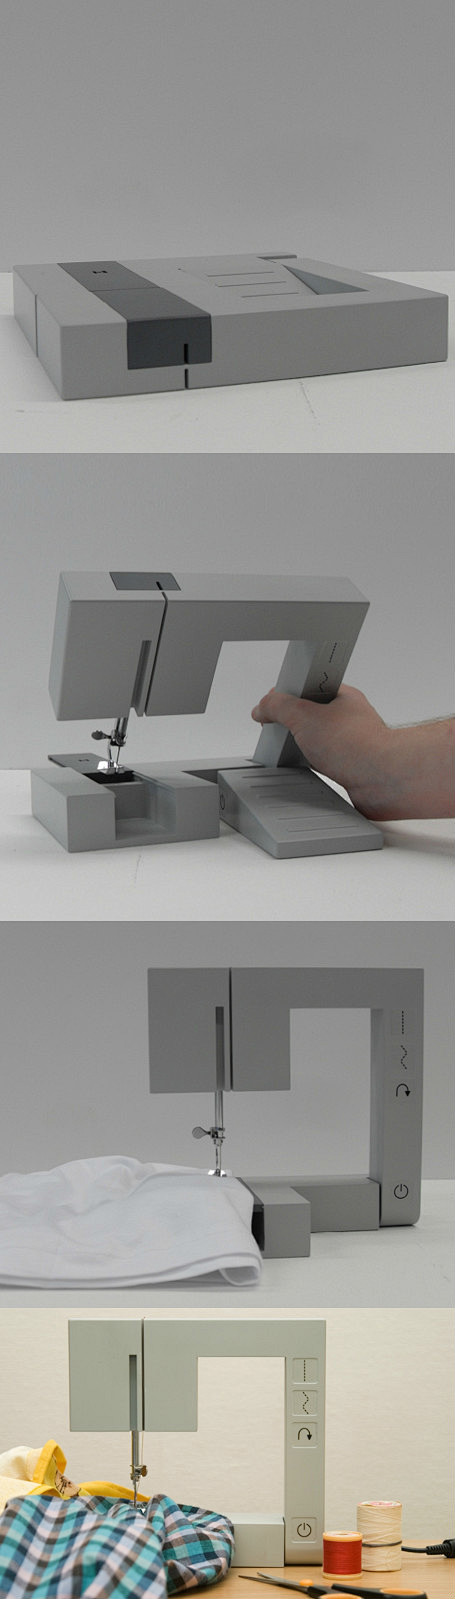 便携式折叠缝纫机